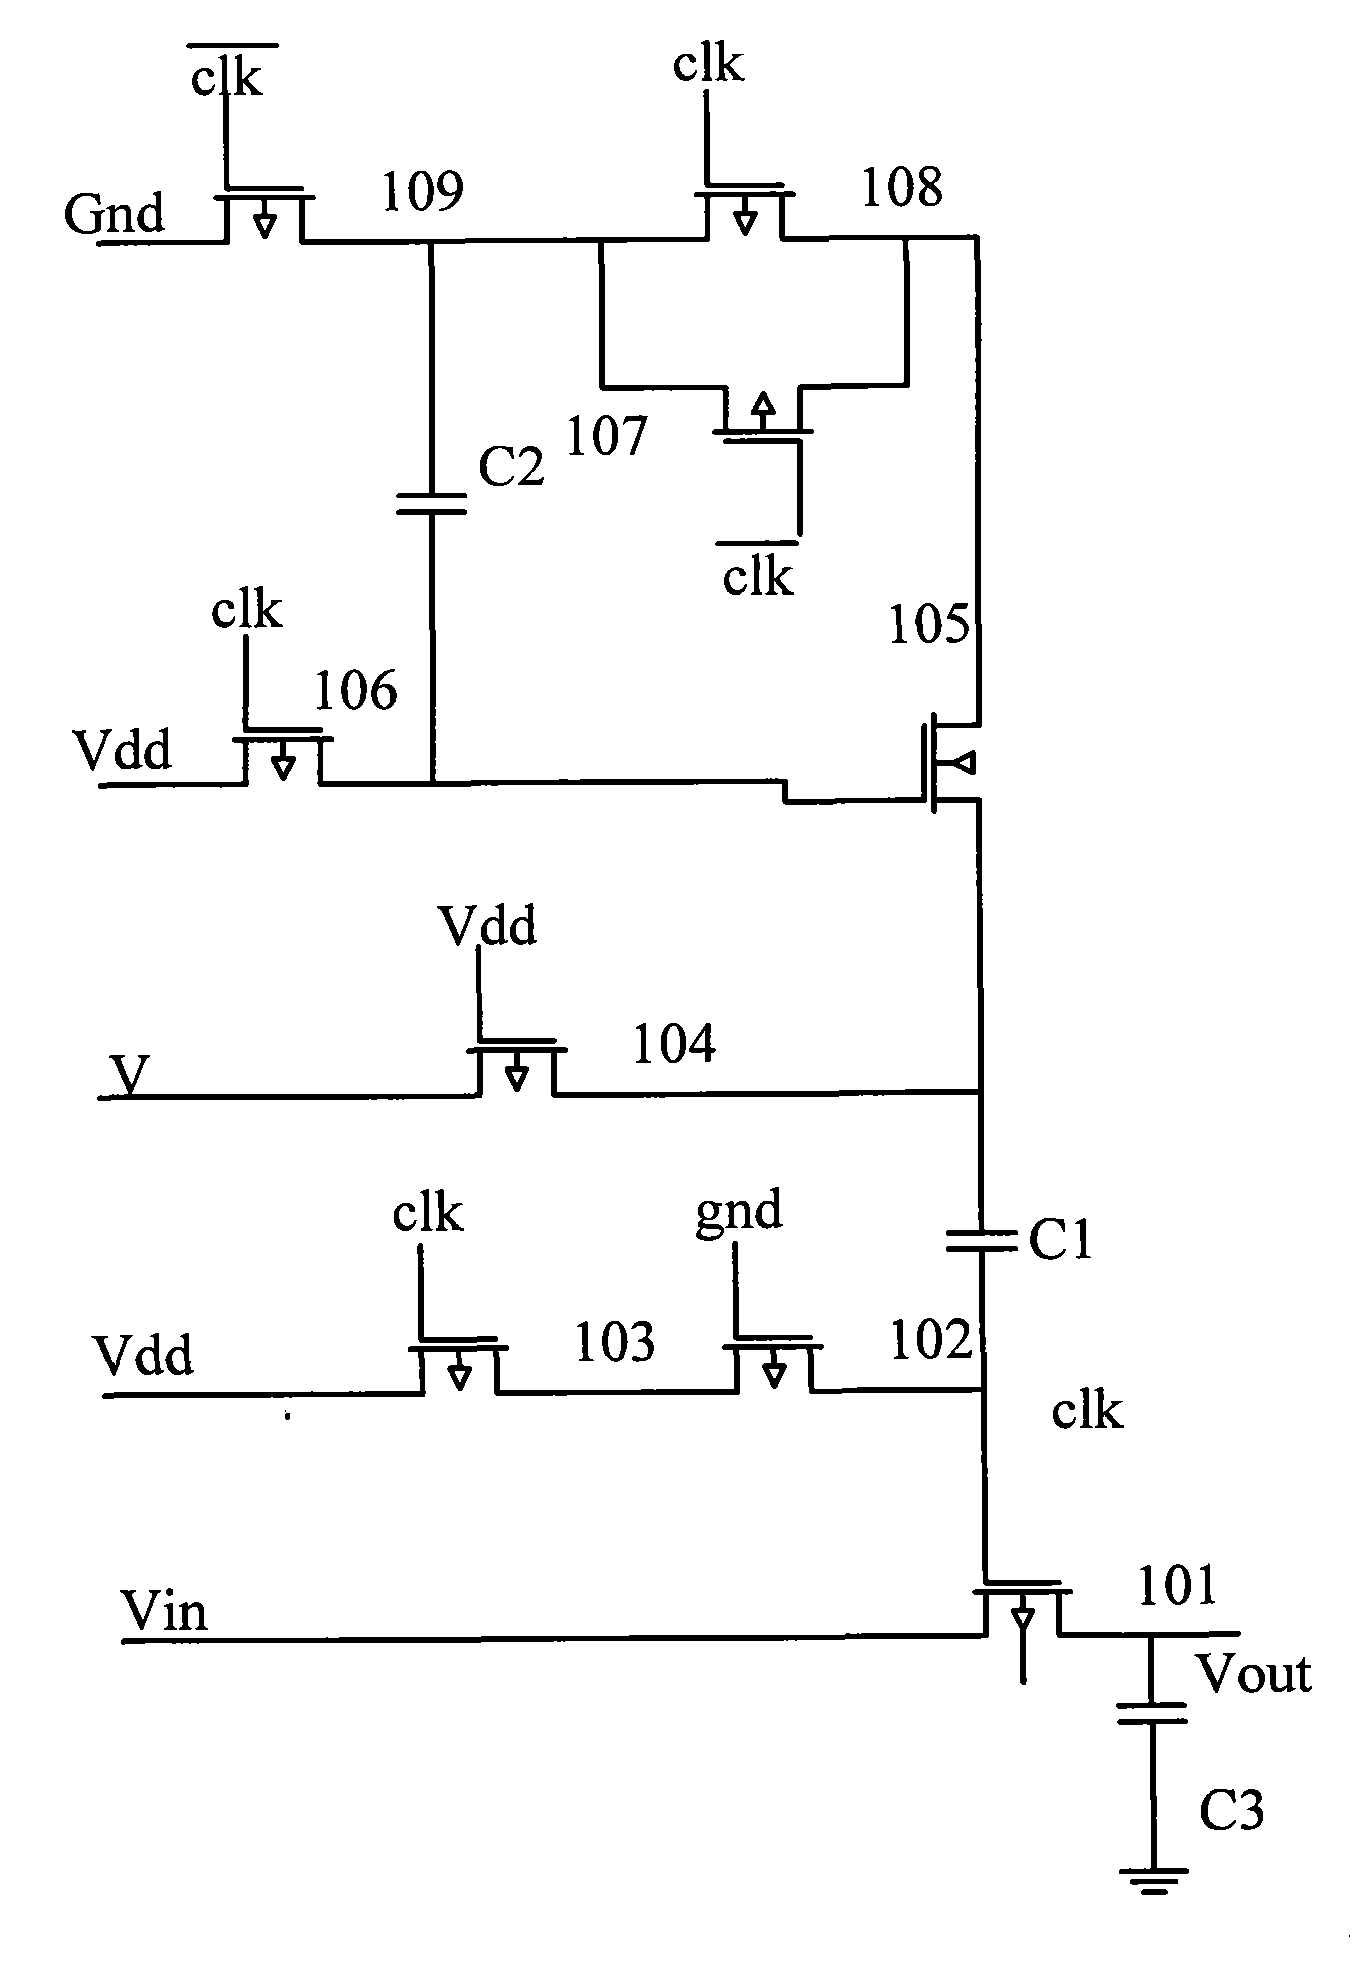 Analog sampling switch and analog-to-digital converter